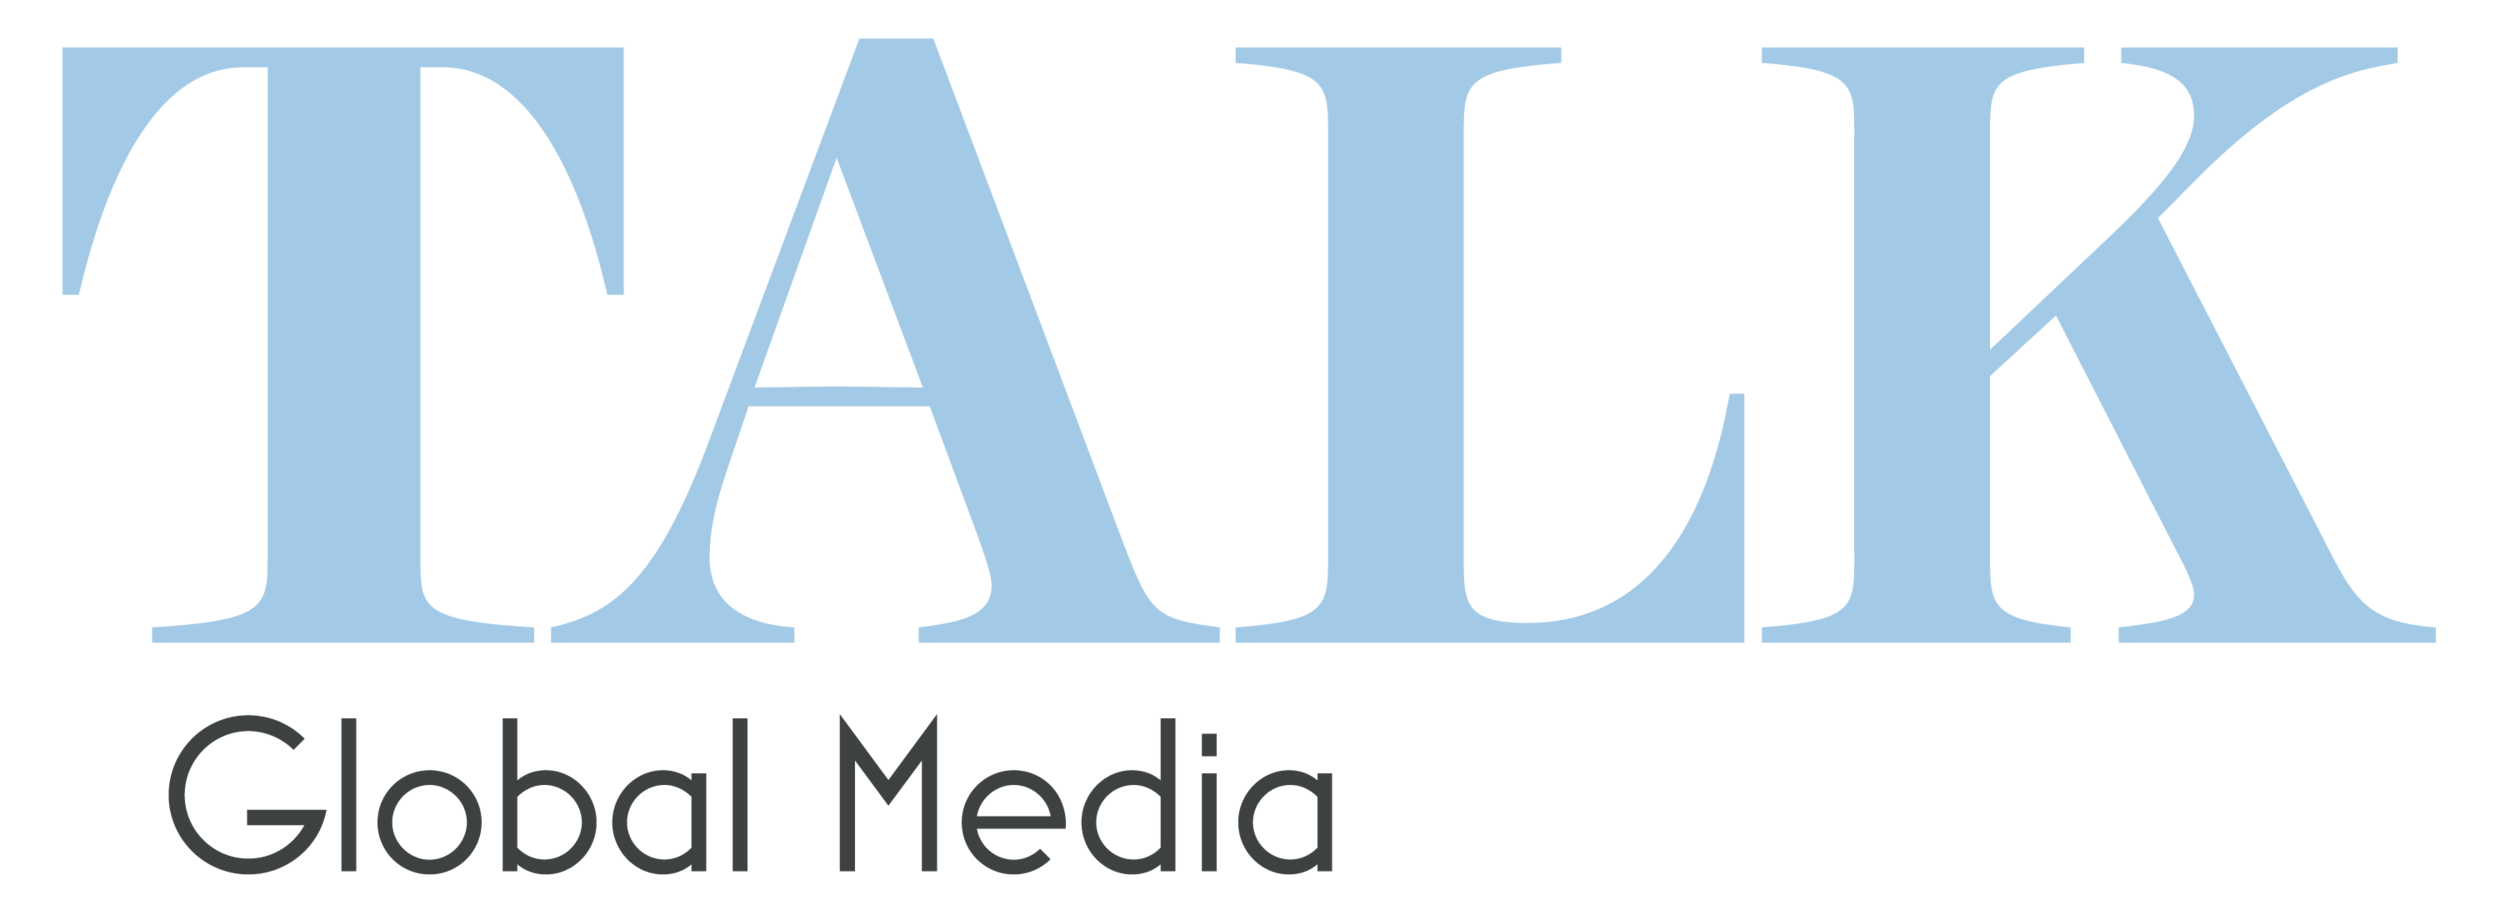 TalkGlobalMedia-logo.png